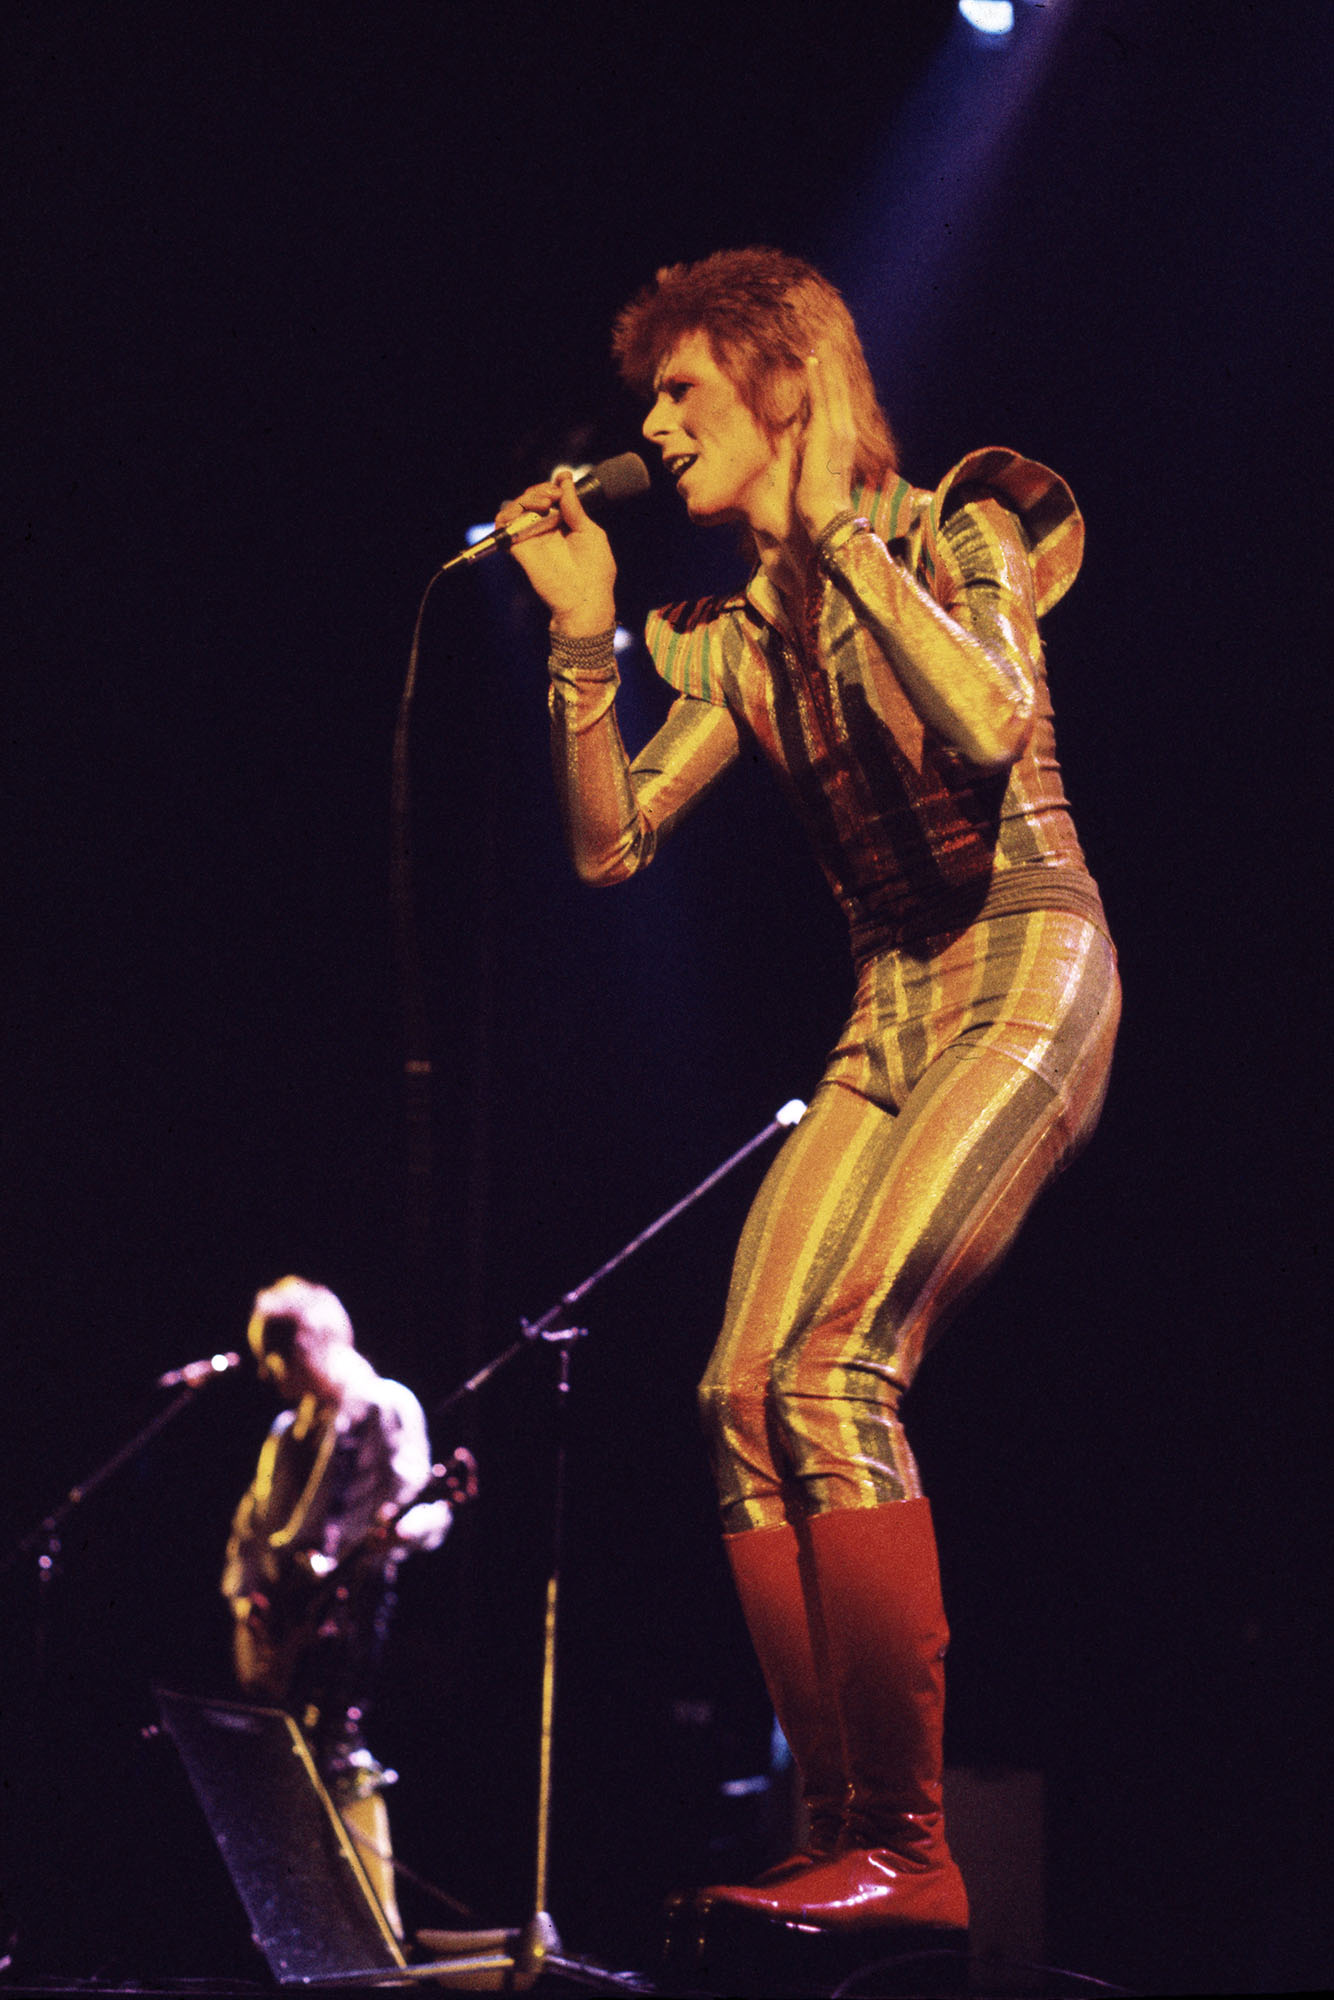 David Bowie tritt auf seiner Ziggy Stardust/Aladdin Sane-Tour auf der Bühne auf